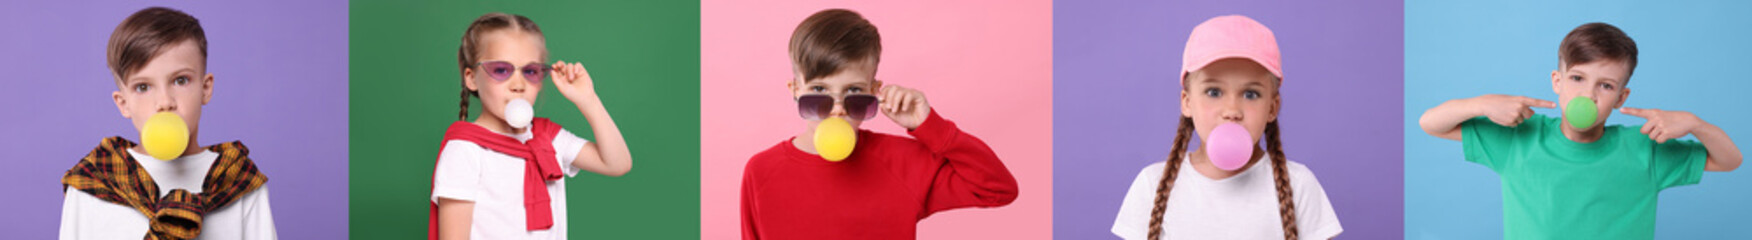 Cute children blowing bubble gums on color backgrounds, set of photos